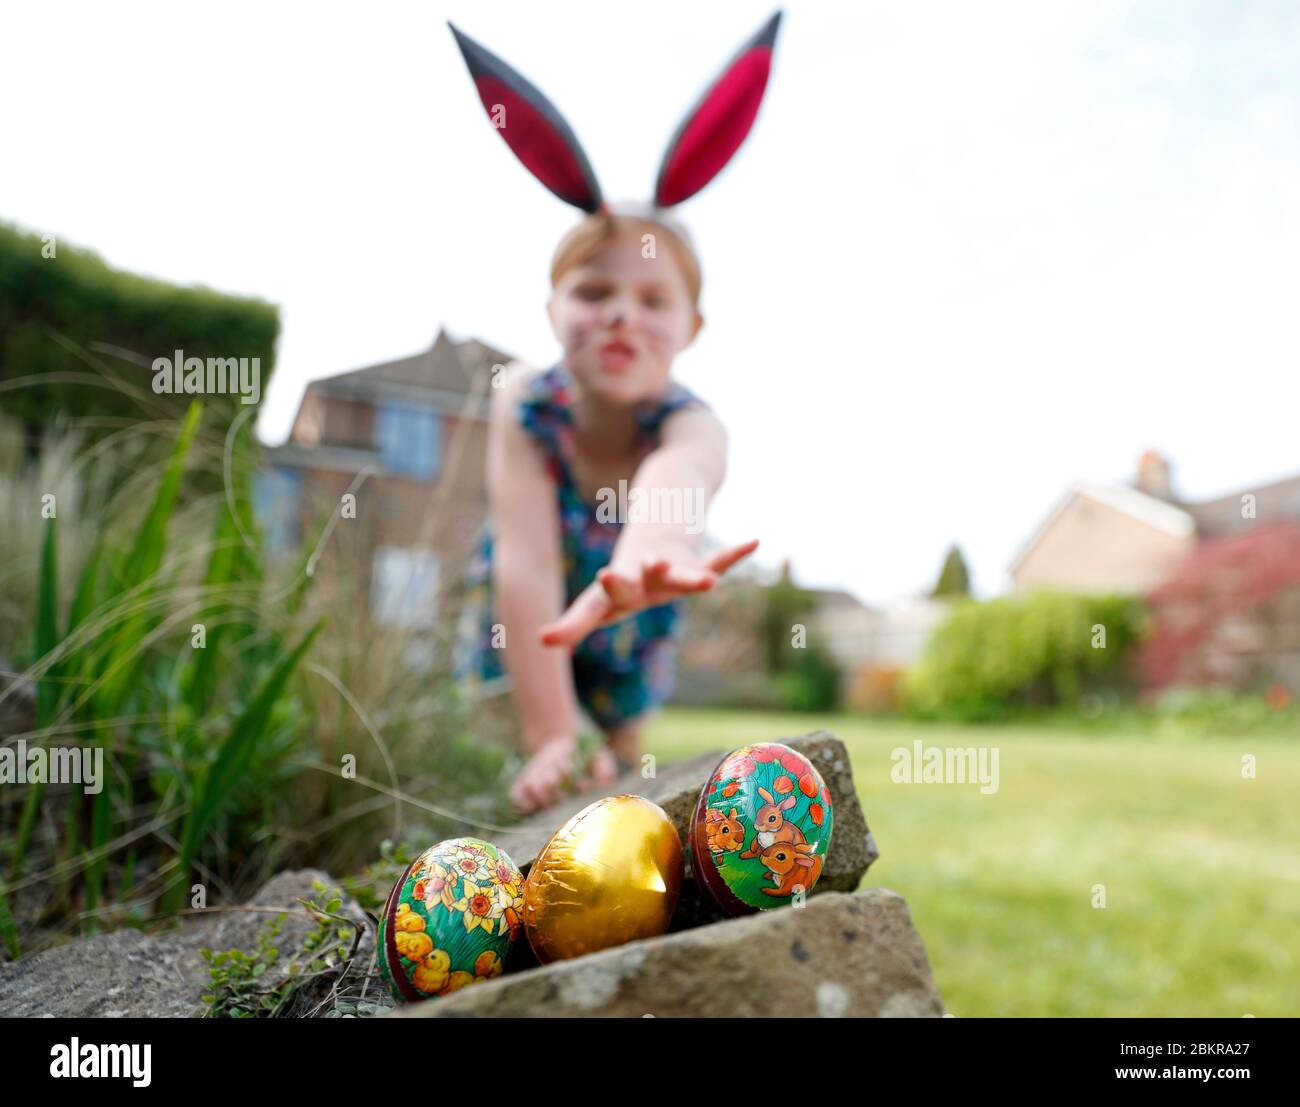 Une jeune fille portant une peinture faciale et des oreilles de lapin maison, participe à une chasse aux œufs le dimanche de Pâques dans son jardin. Banque D'Images